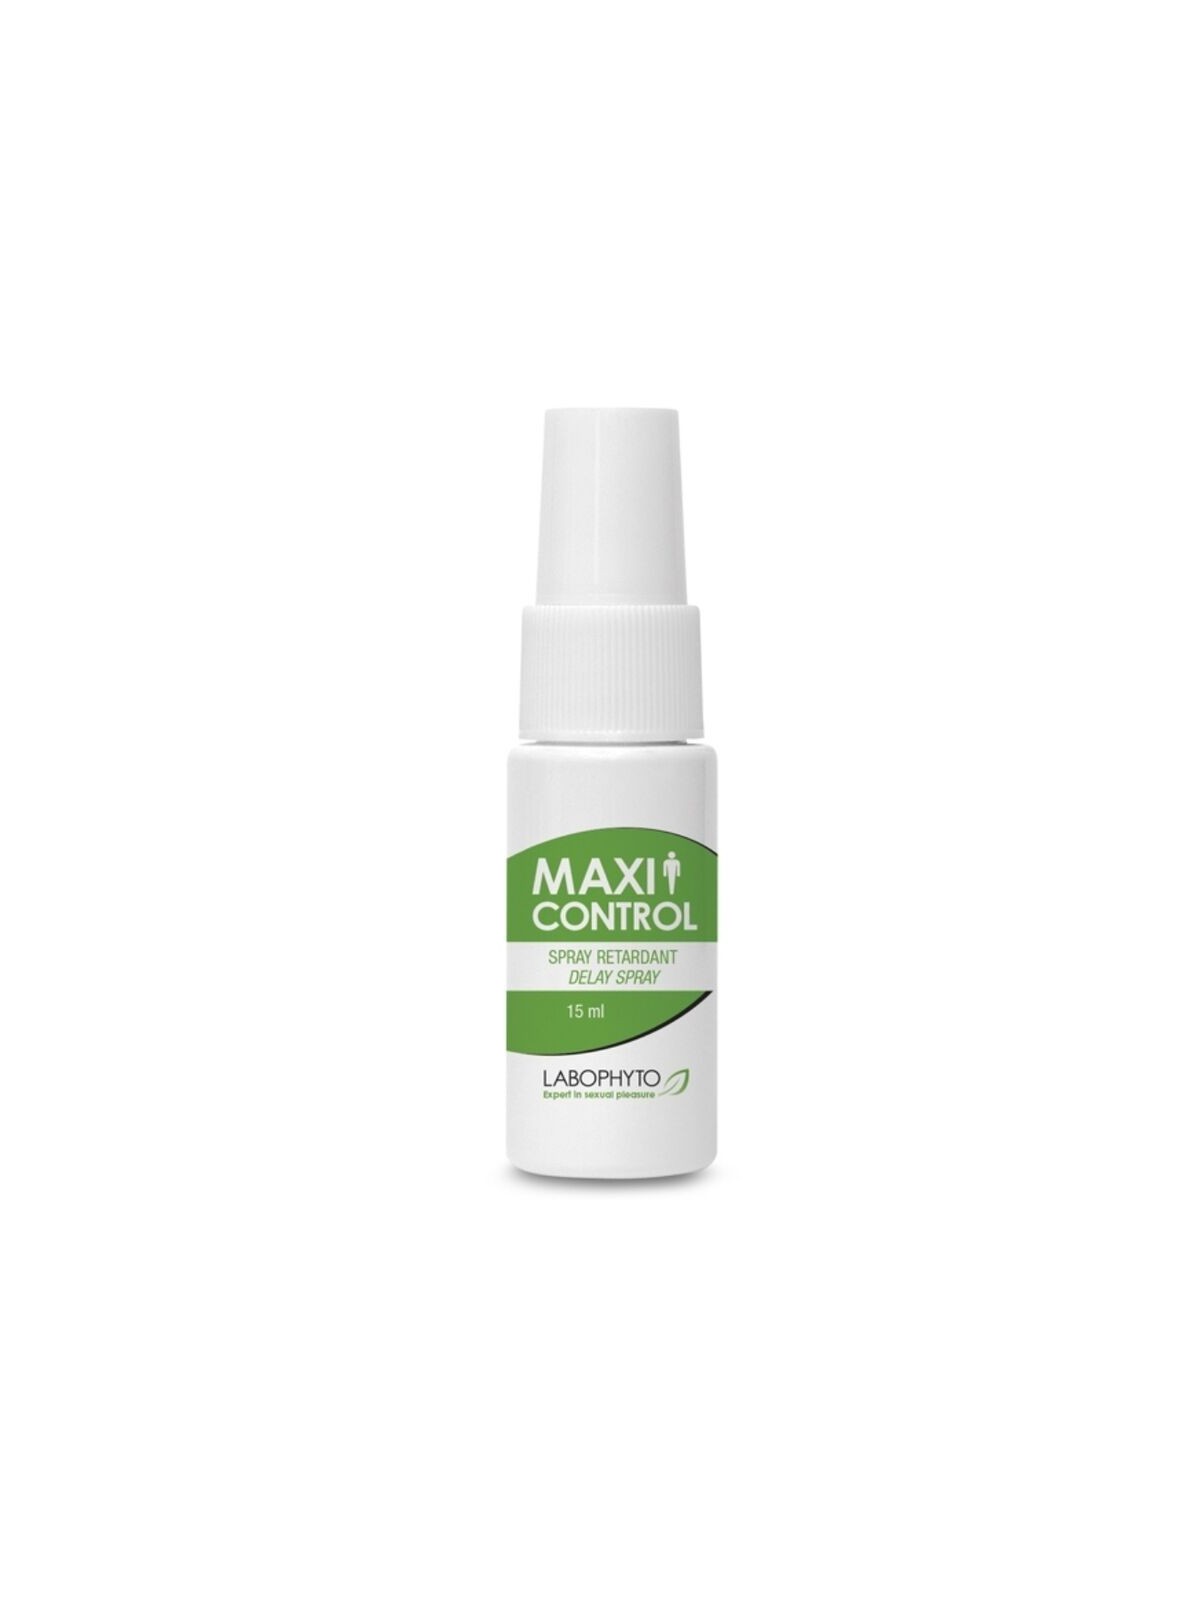 Maxi Control Spray Retardante 15 ml - Comprar Retardante Labophyto - Retardantes (1)